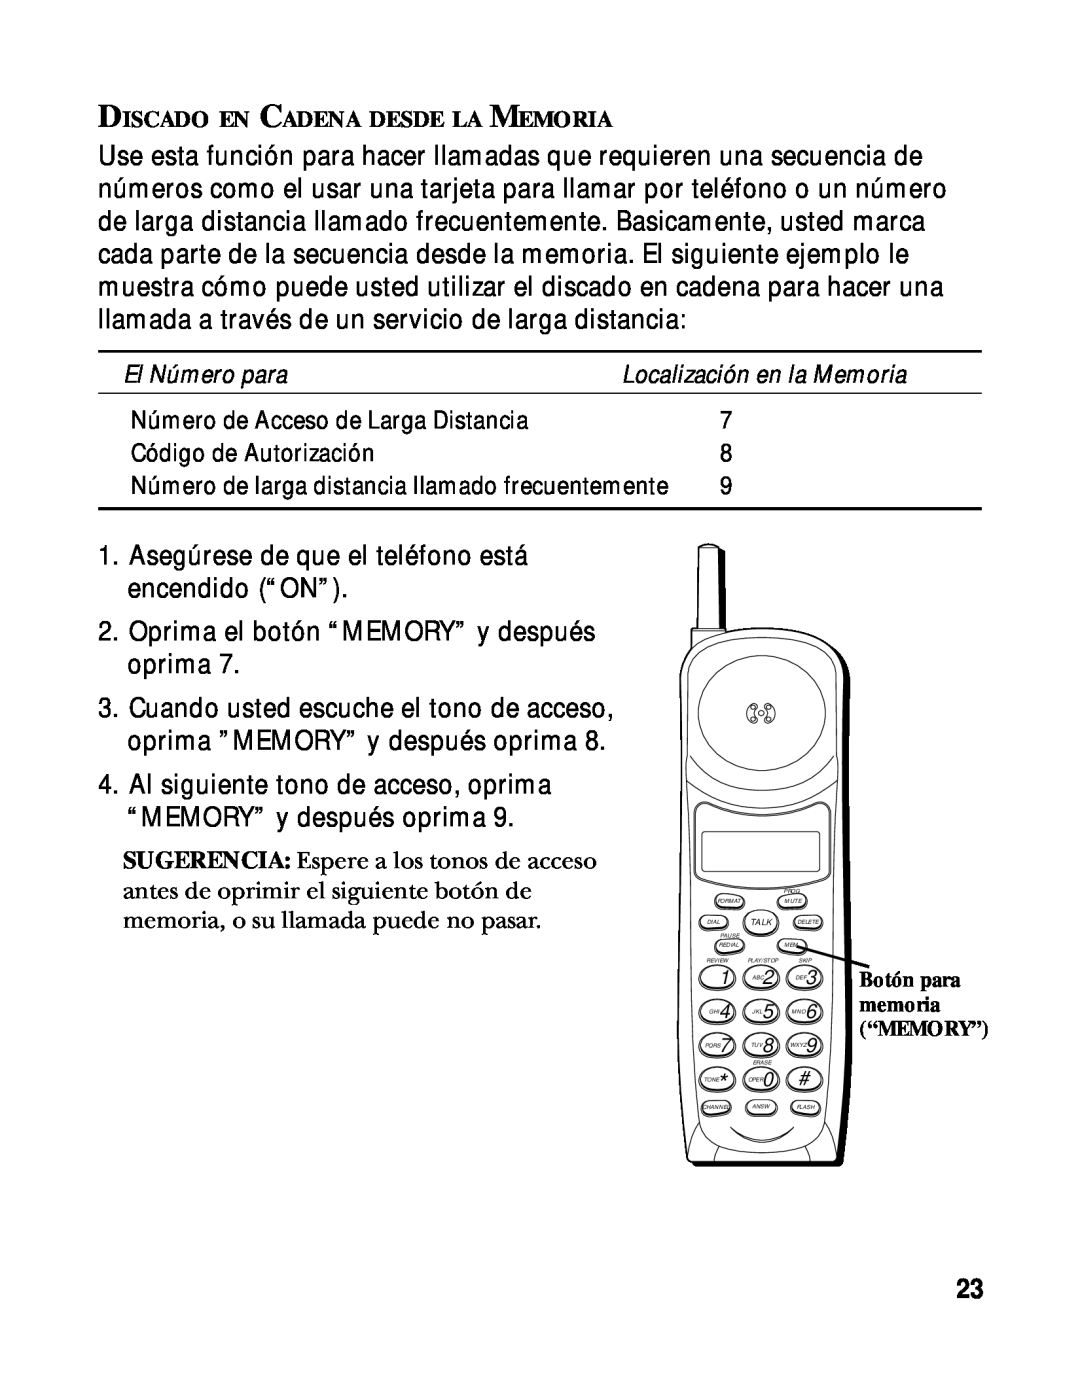 RCA 900 MHz manual Asegúrese de que el teléfono está encendido “ON” 